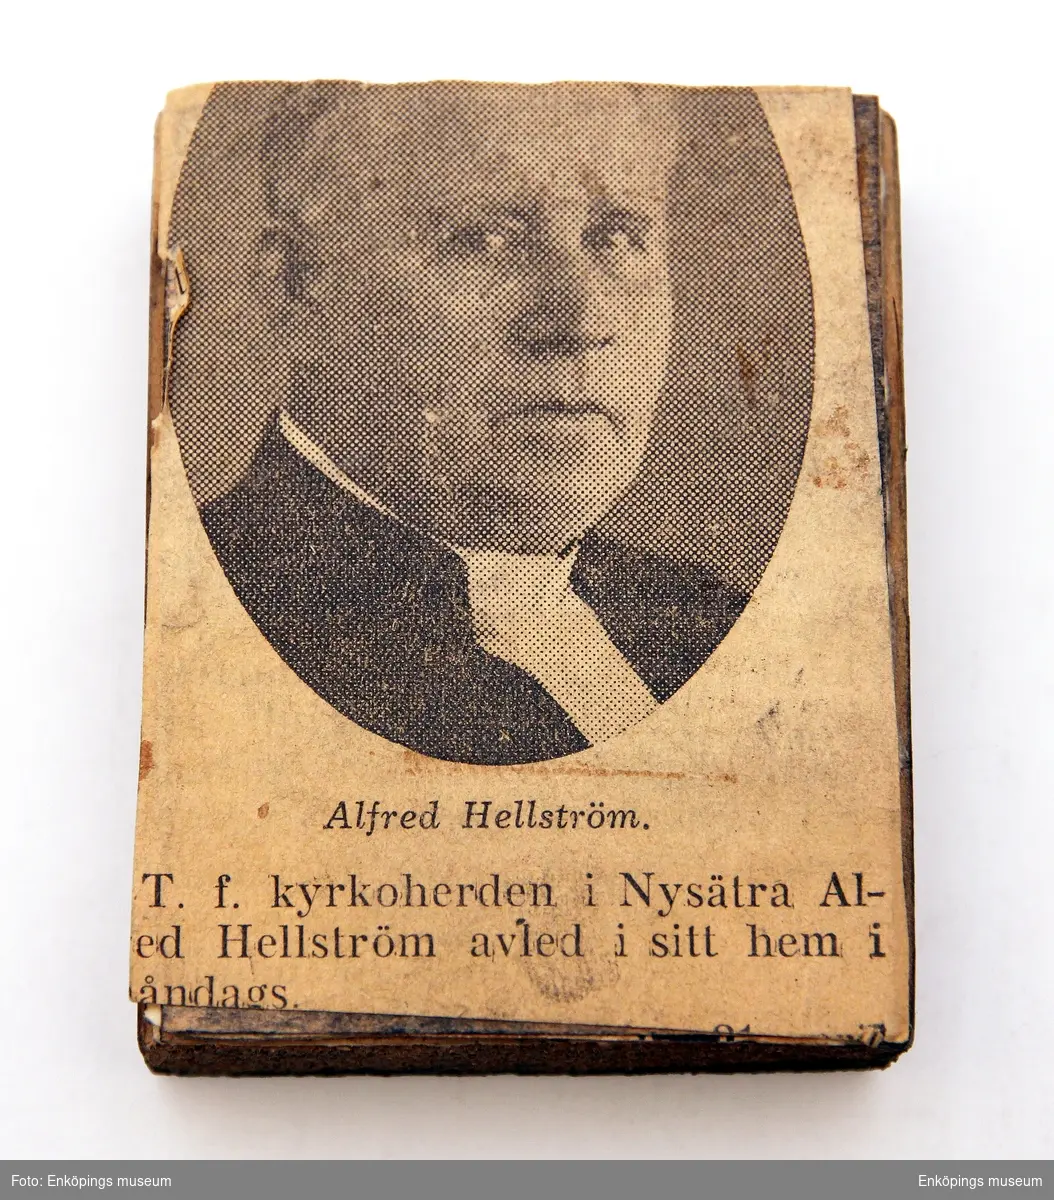 Matrisen föreställande t. f. Kyrkoherden i Nysätra Alfred Hellström.